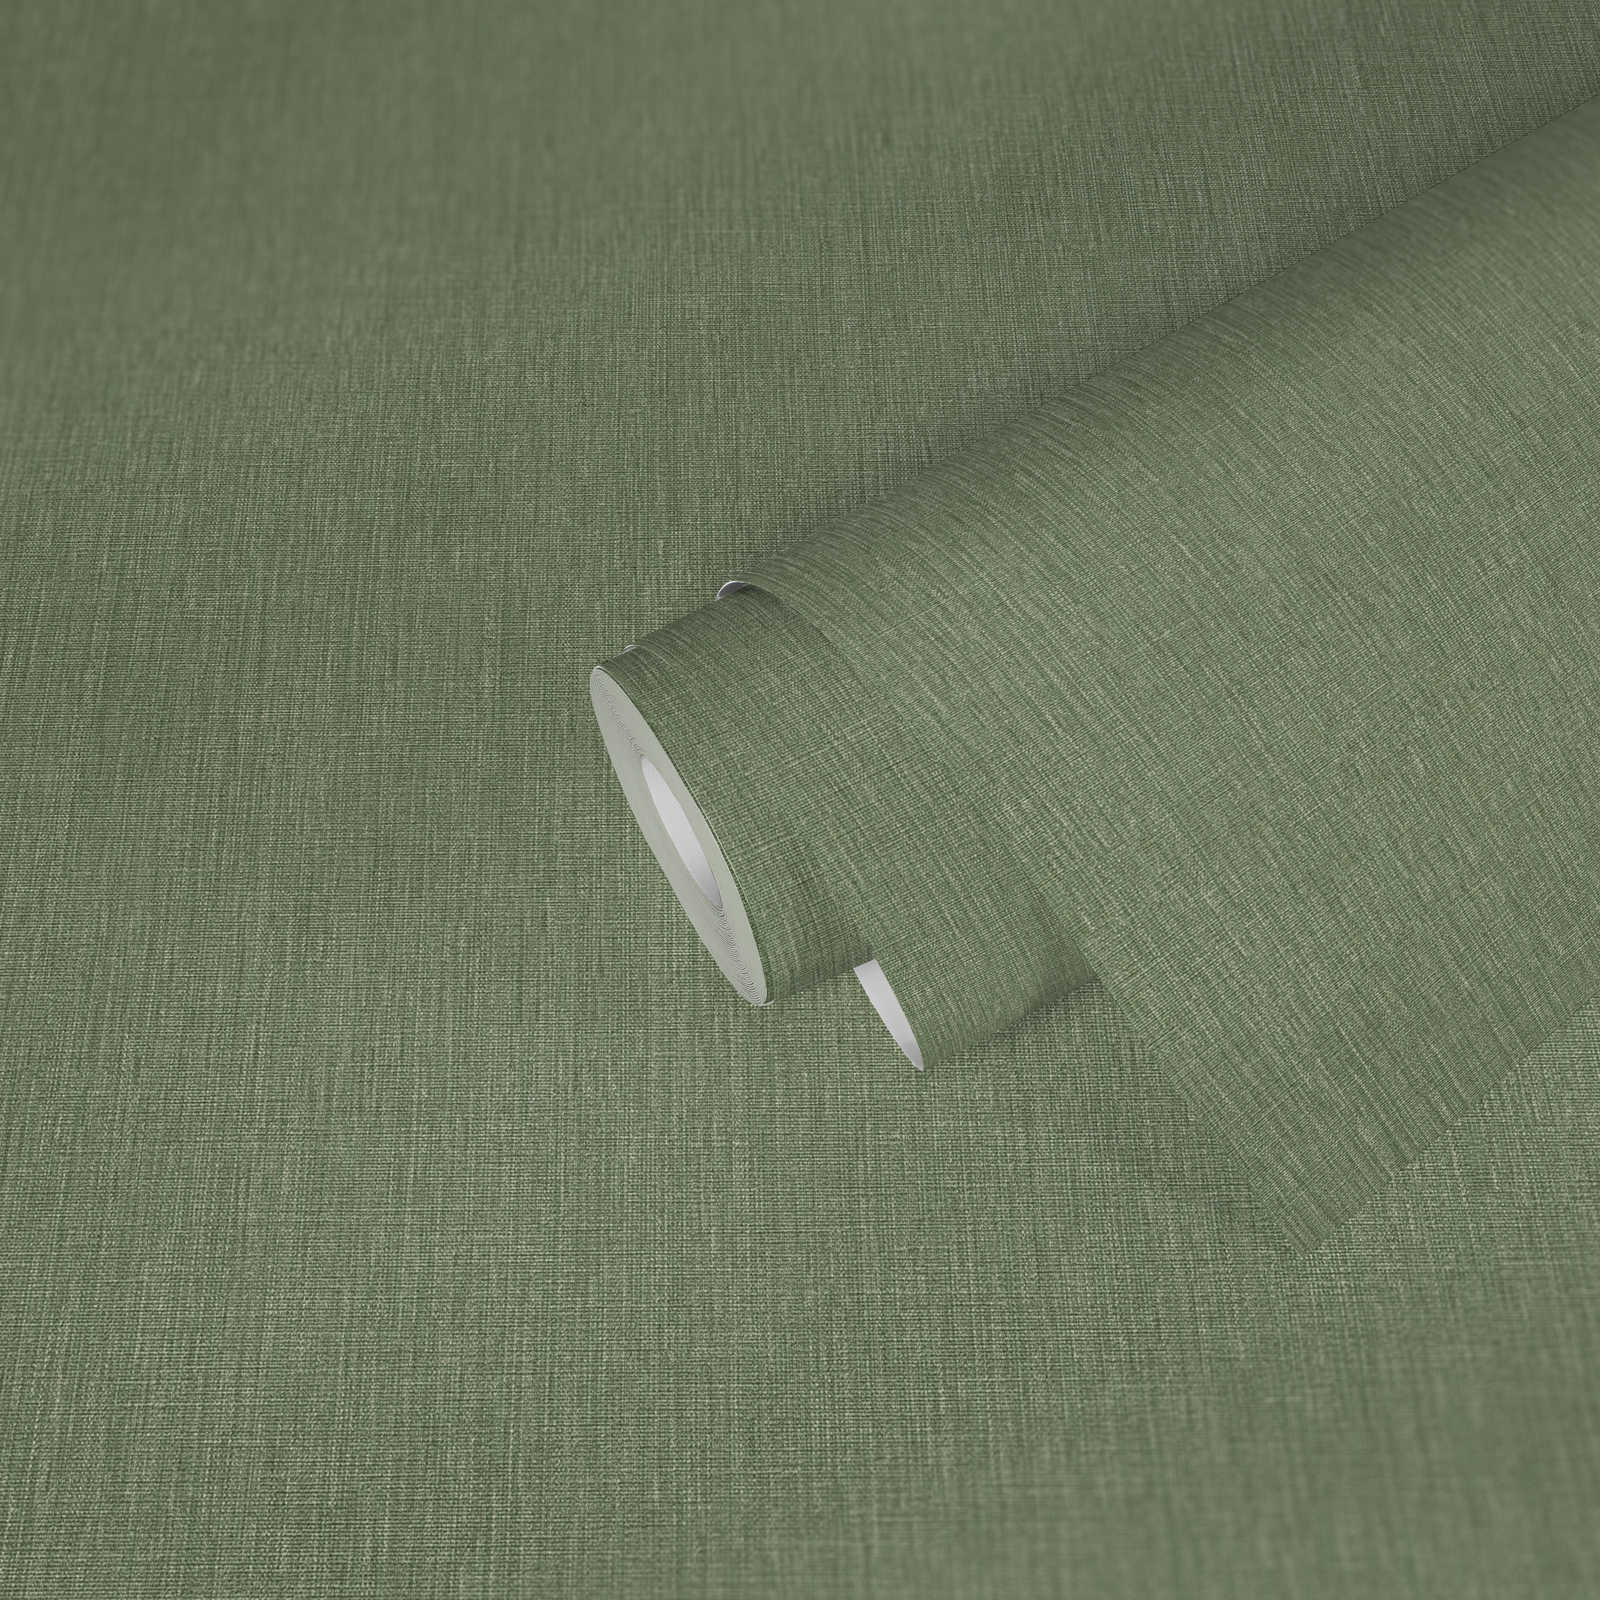             Papel pintado de tejido-no-tejido con textura ligera y aspecto textil - verde
        